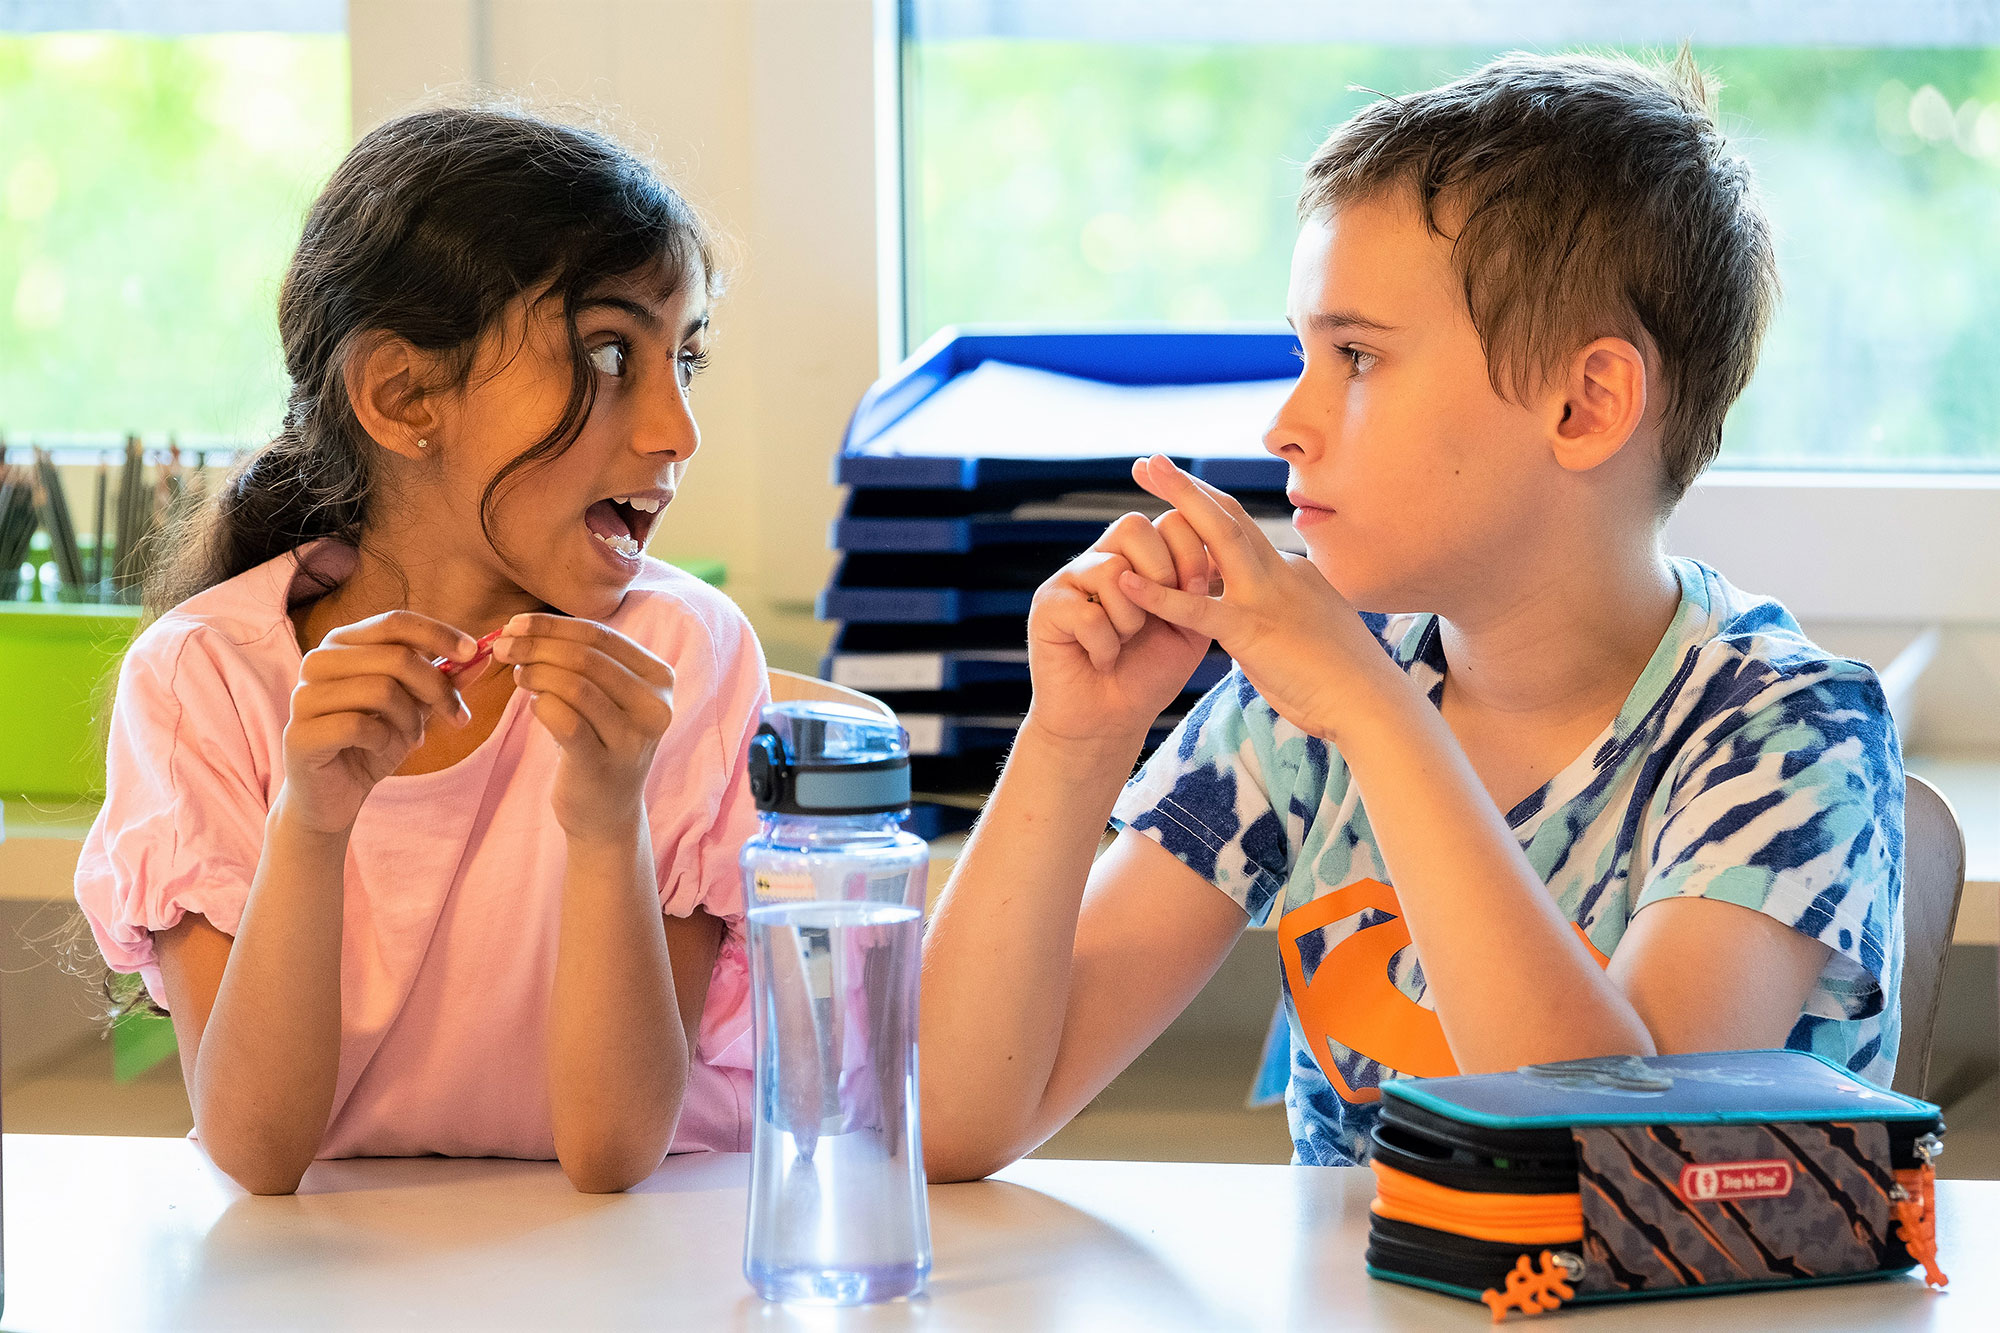 Ein Junge und ein Mädchen sitzen zusammen am Tisch im Primarschulunterricht und diskutieren etwas.	